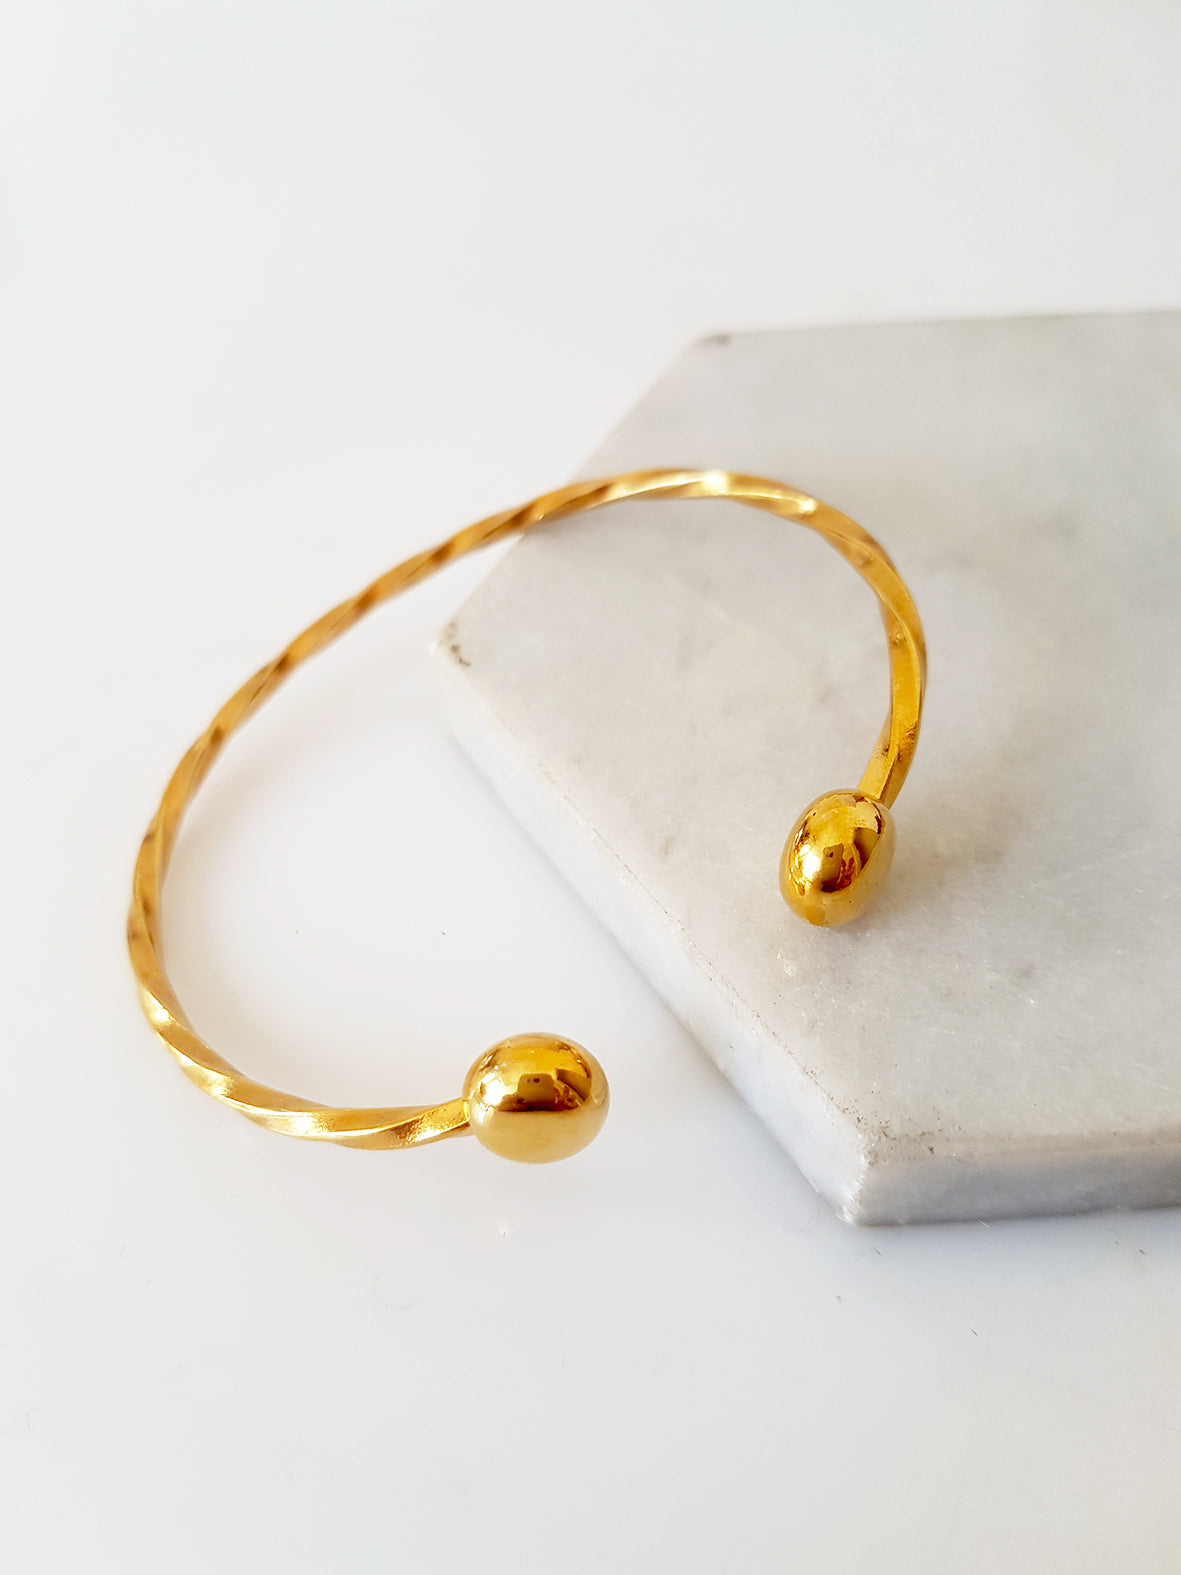 Twisted brass bracelet, package of 3 bracelets - SoCuteb2b